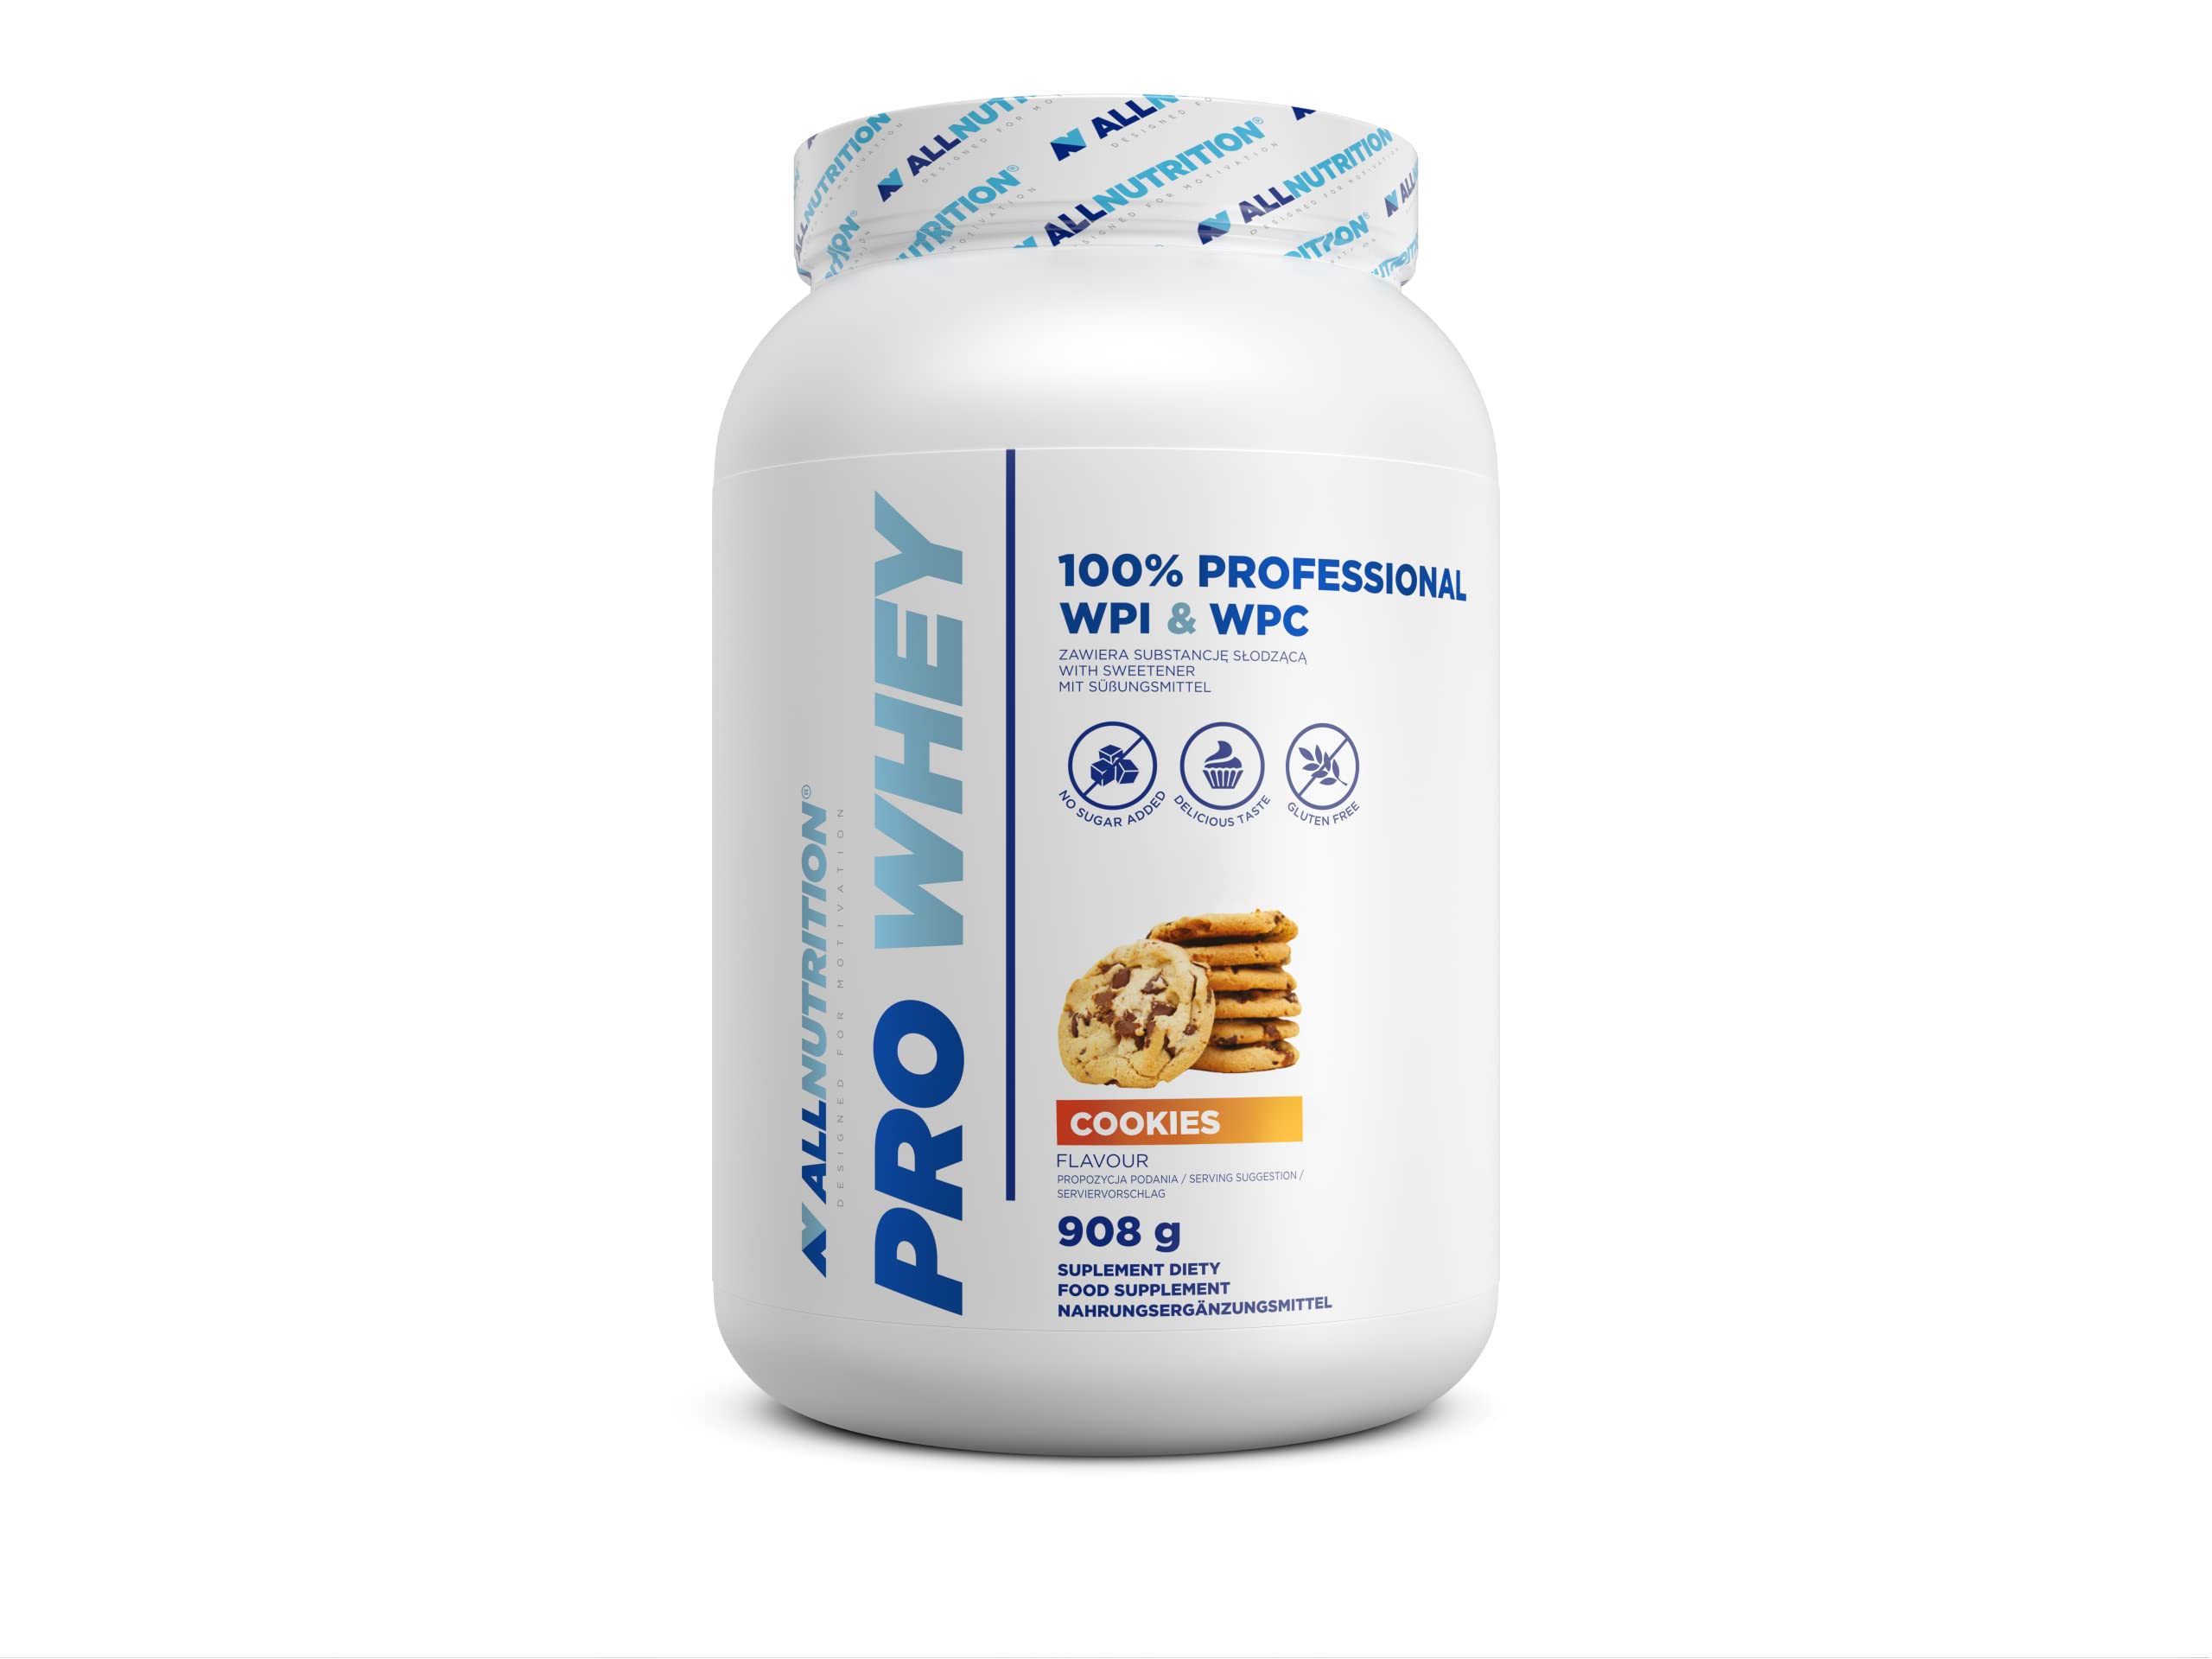 ALLNUTRITION Pro Whey Protein Powder mit Verzweigten Aminosäuren - Molkenprotein-Konzentrat & Molkenprotein-Isolat - Pre-Workout-Pulver - Kalorienarmes Proteinpulver - 908g - Kekse